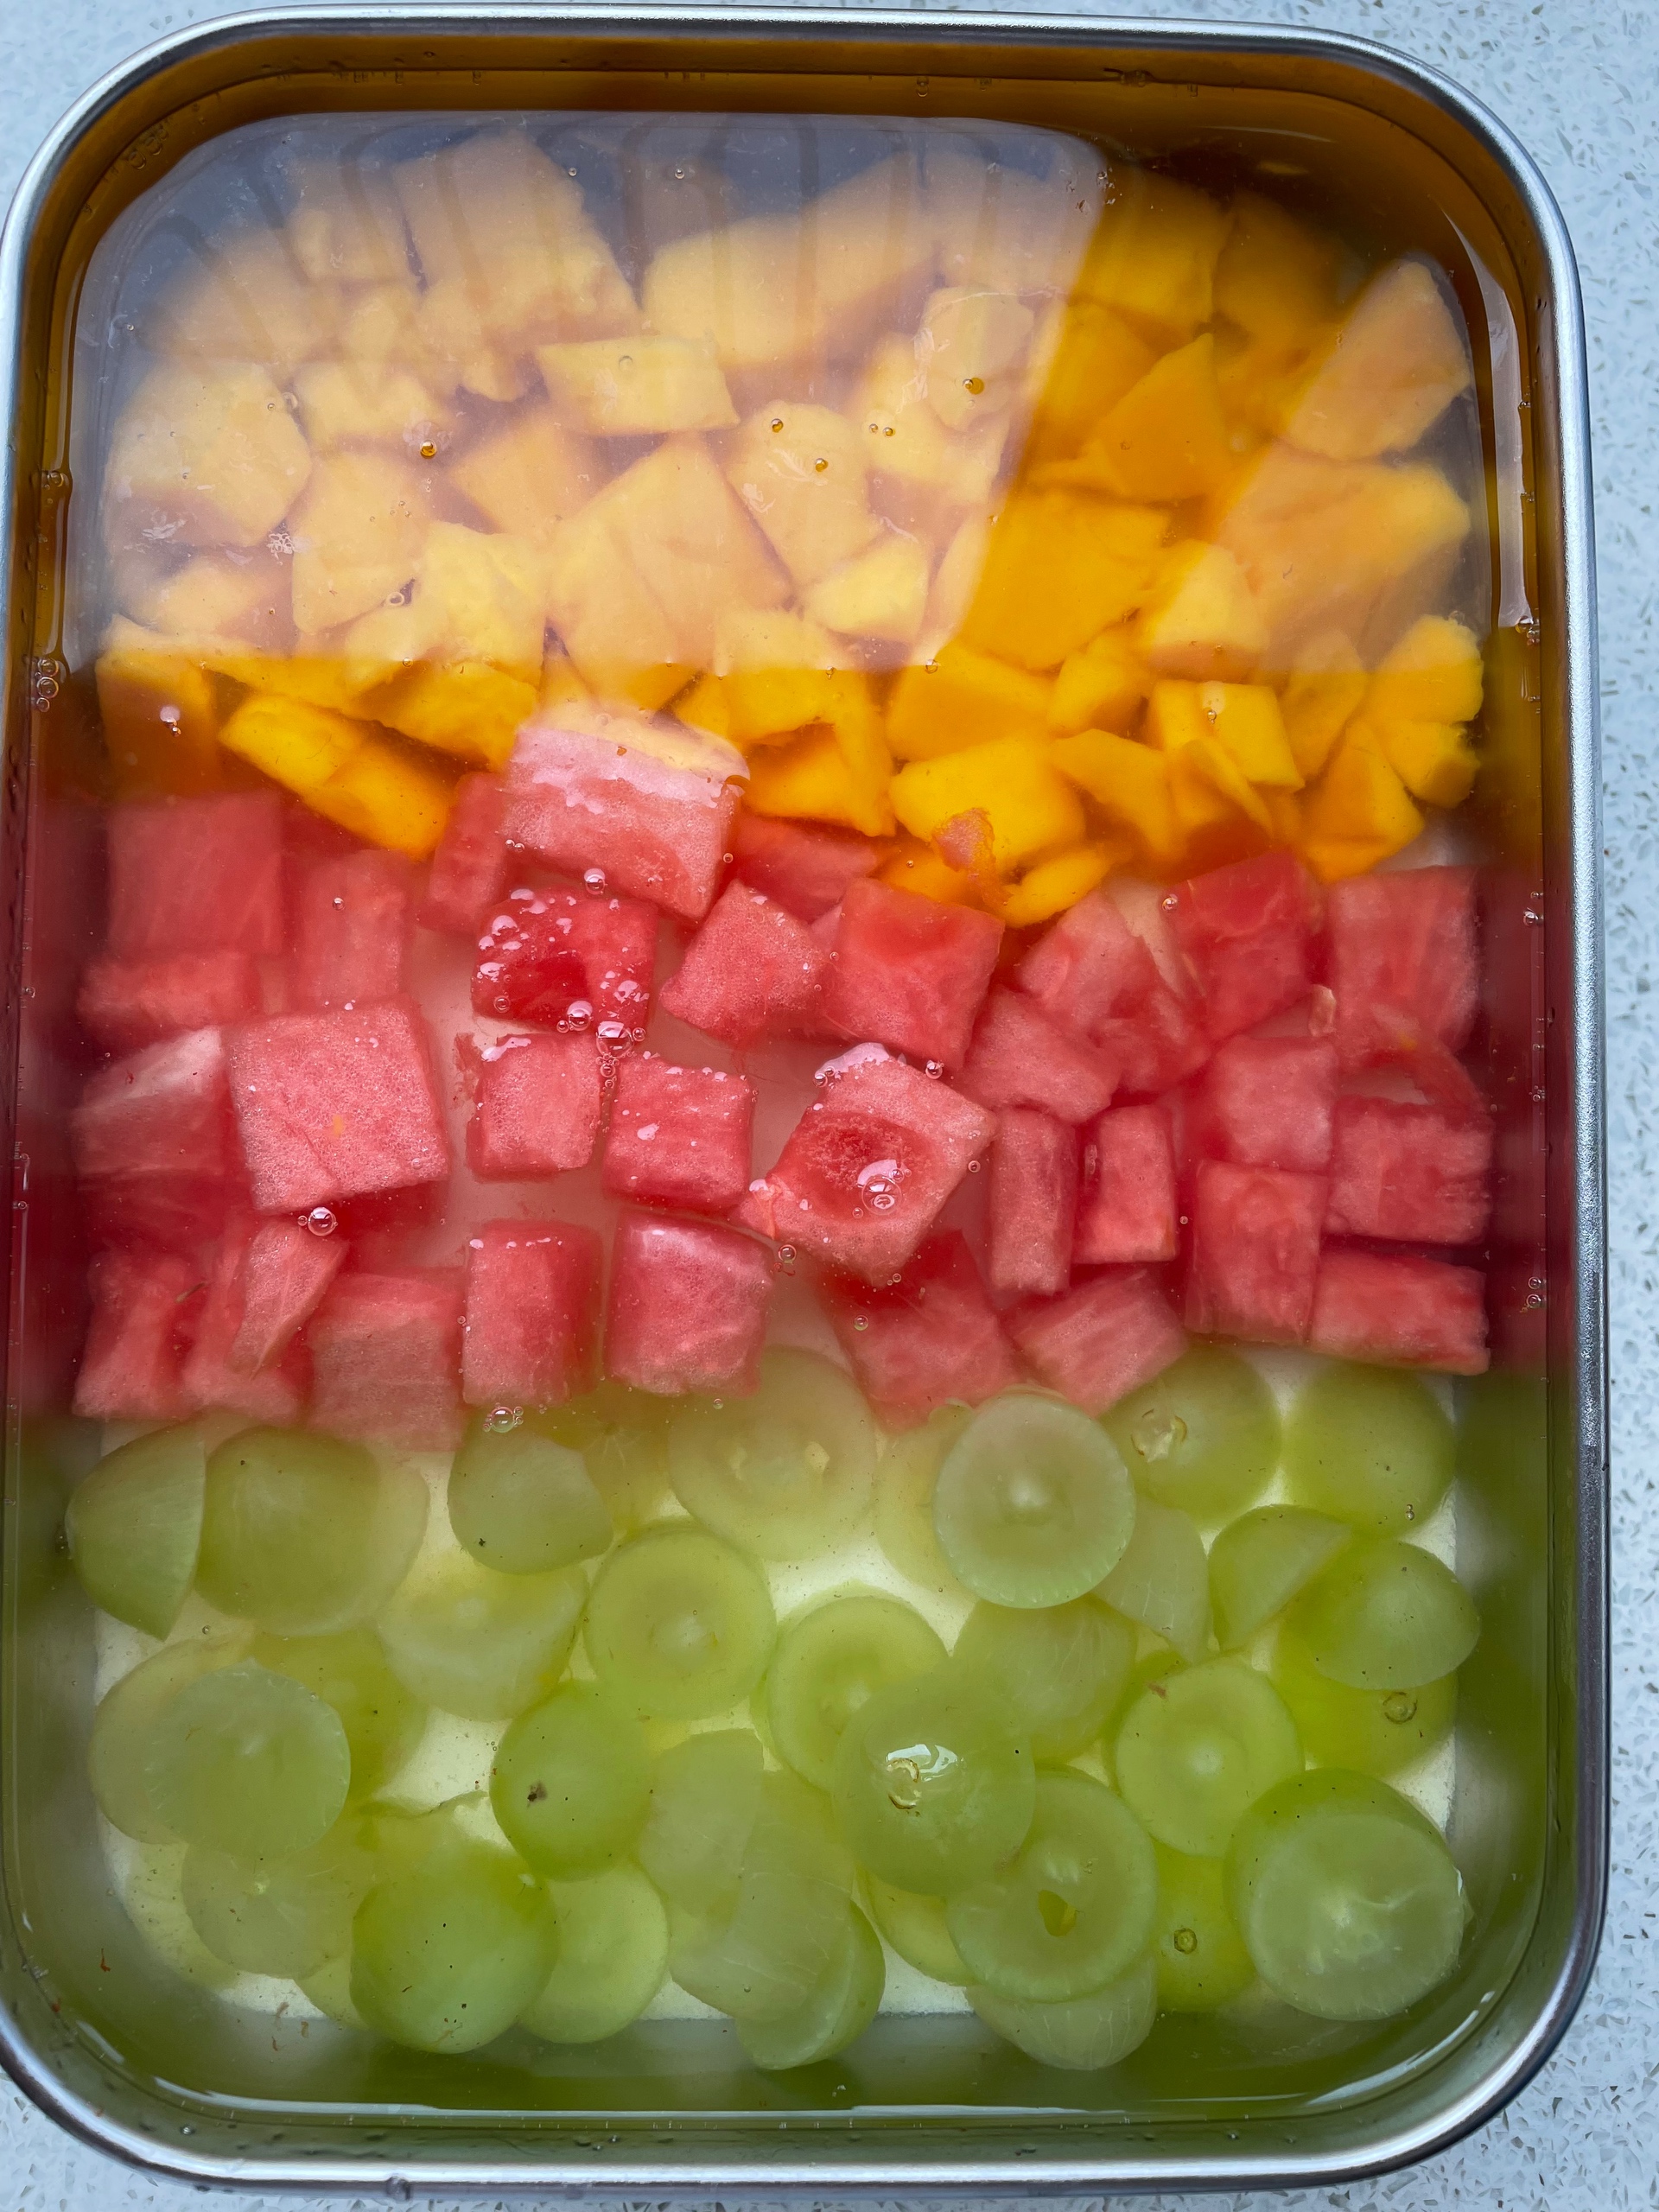 水果果冻的做法